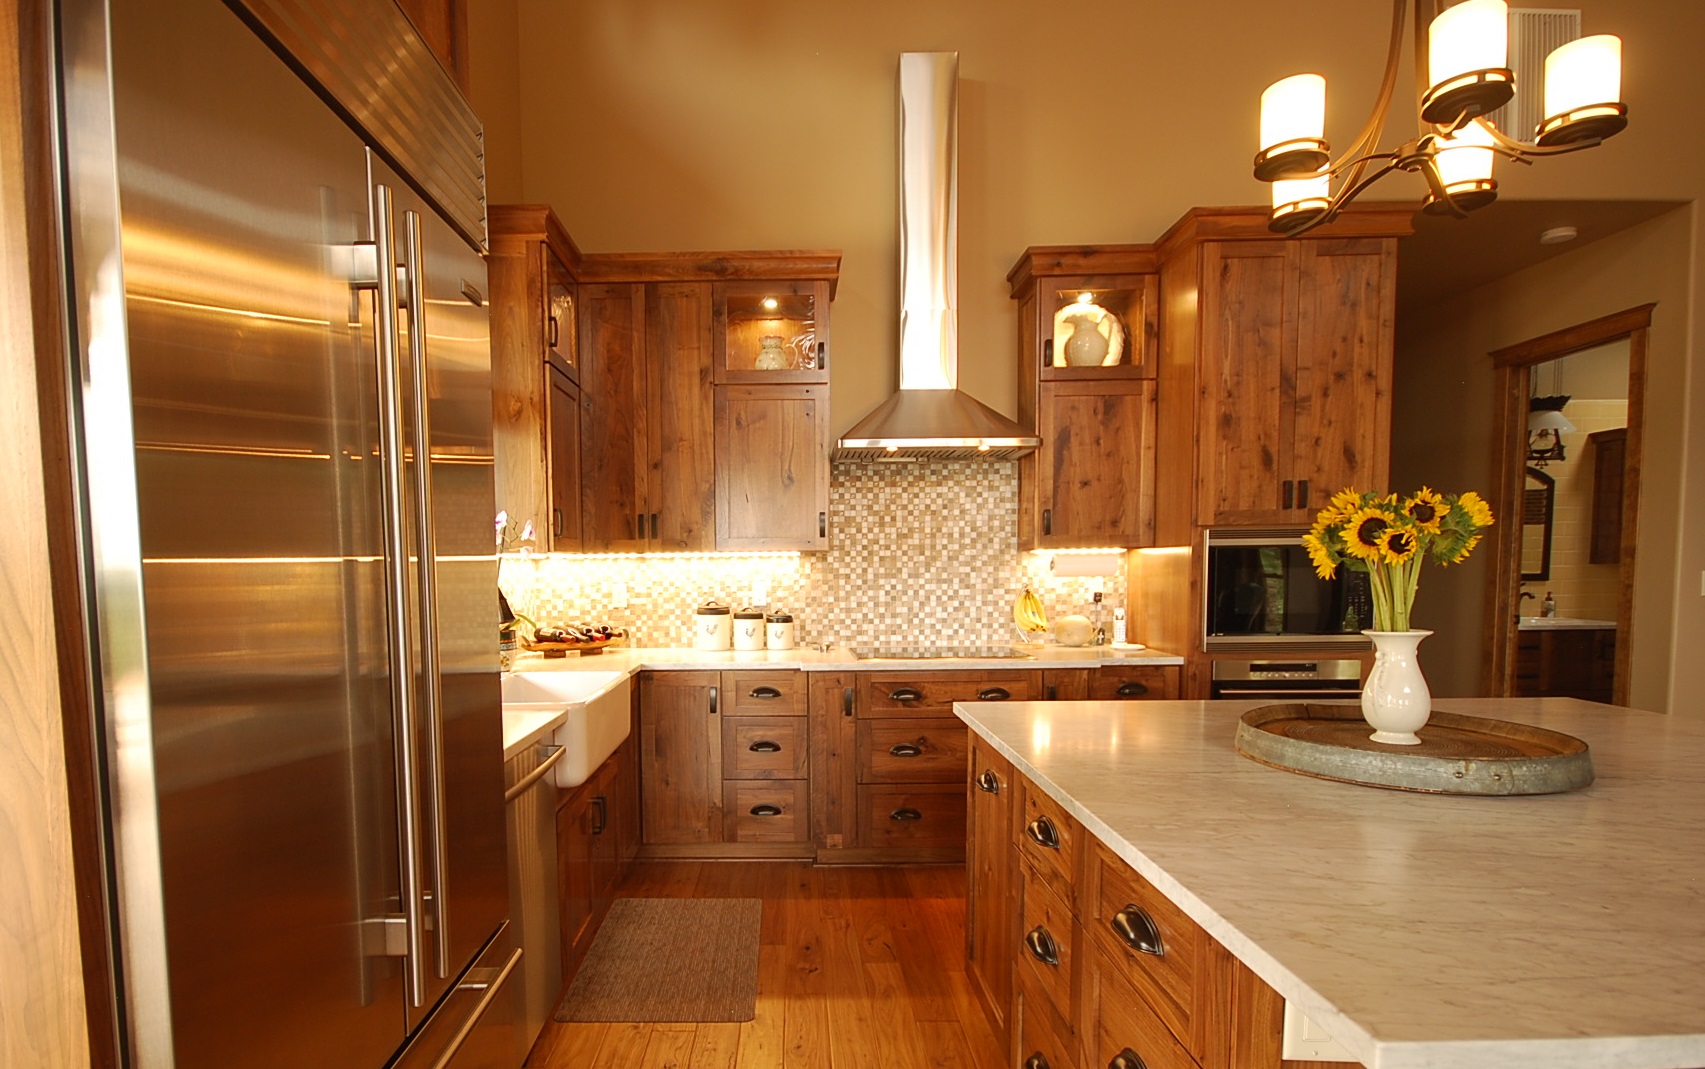 Stunning Kitchen Cabinets Design  Walnut kitchen cabinets, Walnut kitchen, Kitchen  cabinets